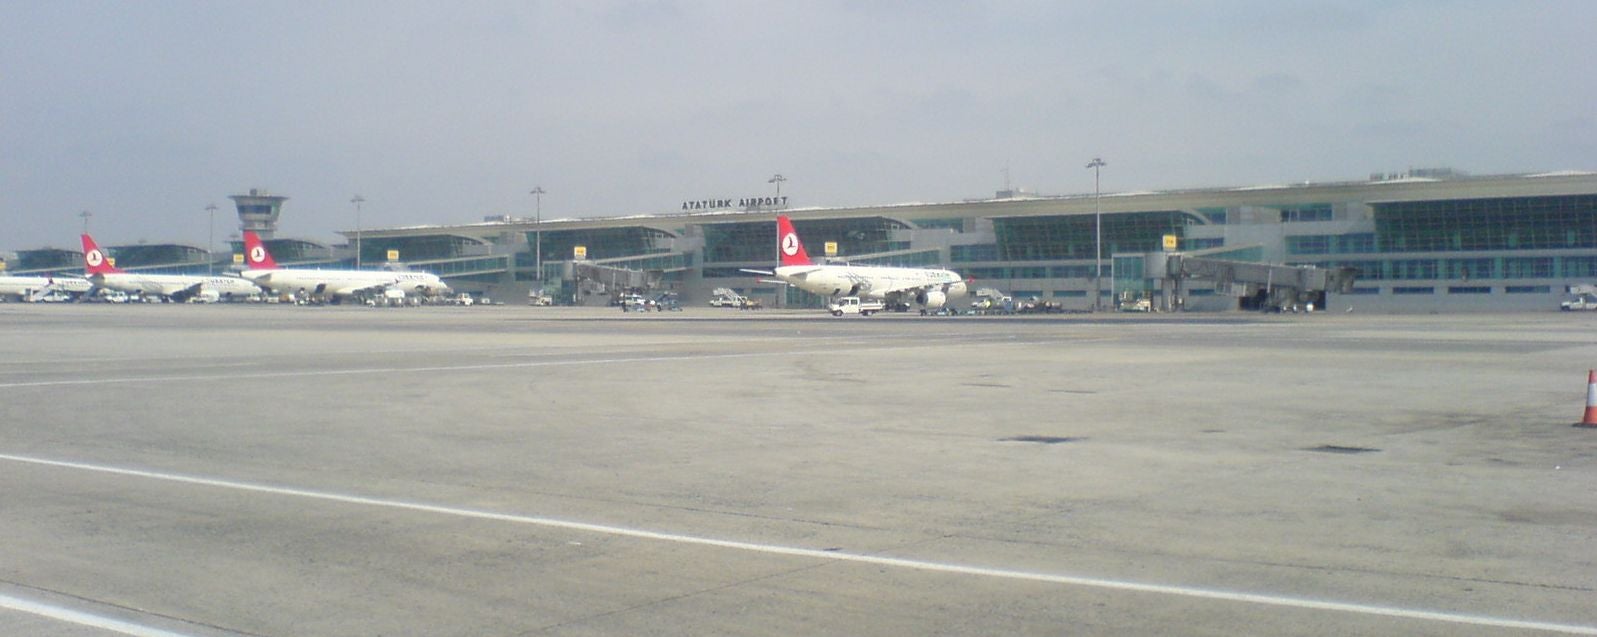 Ataturk airport